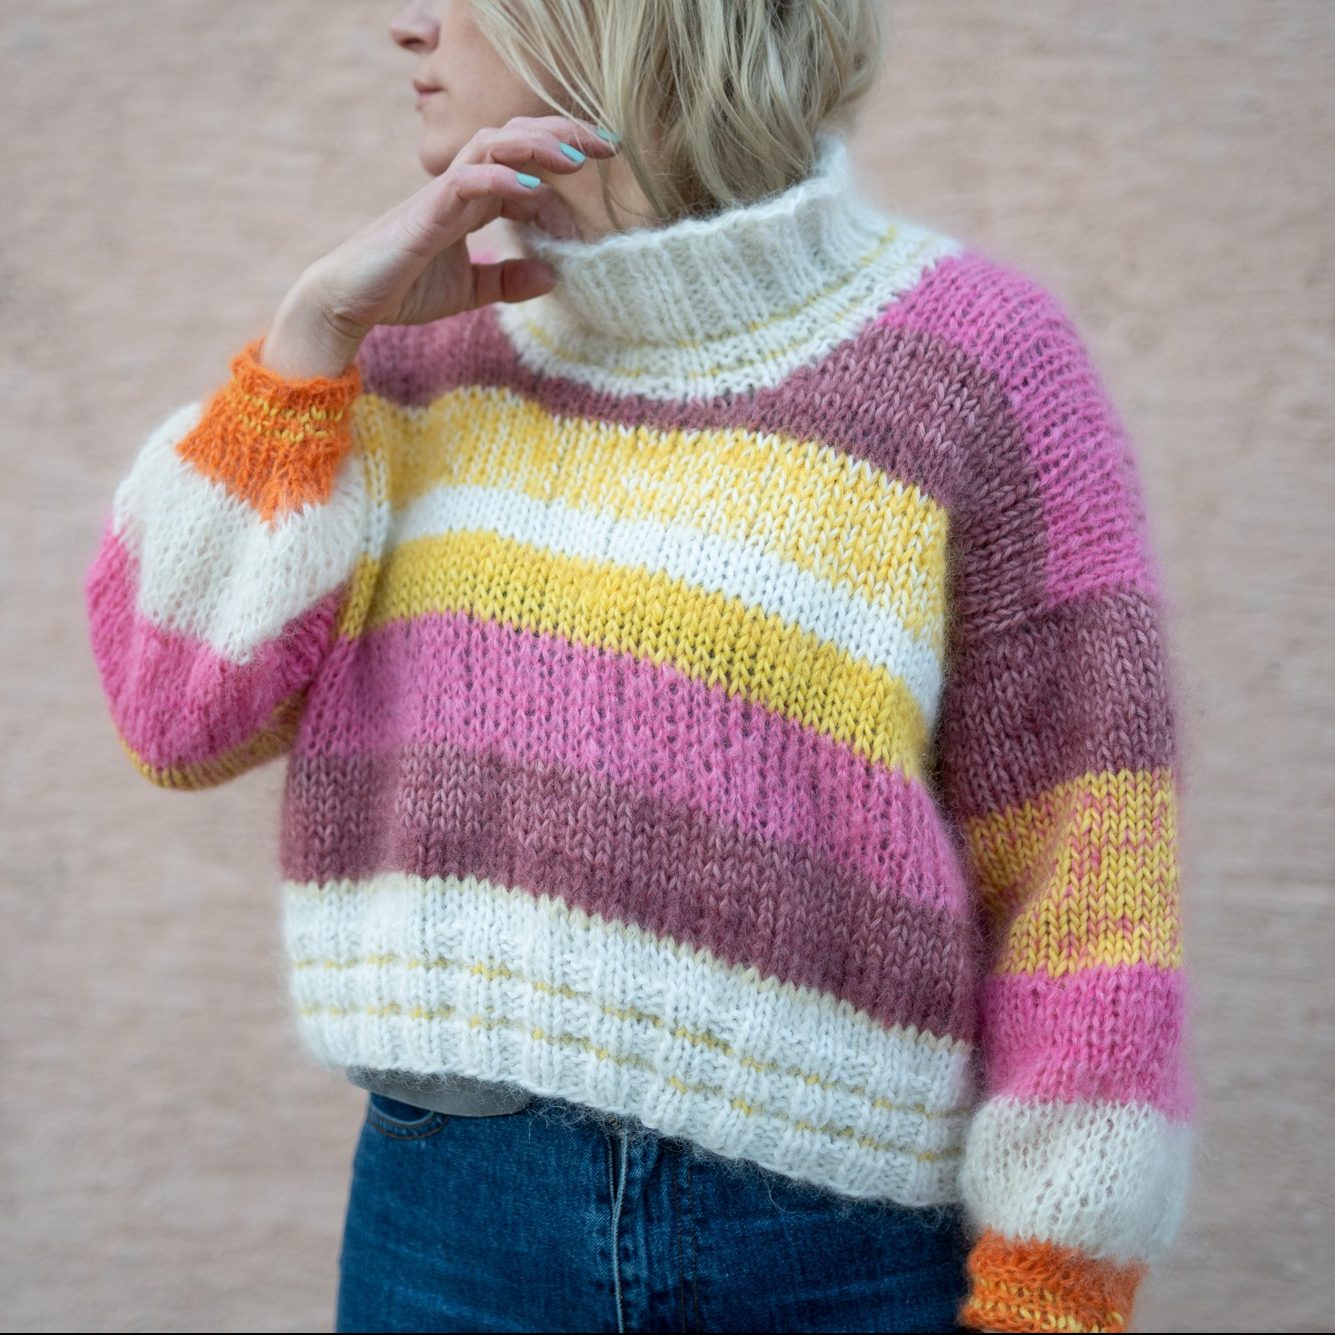 Sunrise sweater | Scrapyarn knit sweater | Knit pattern by HipKnitShop